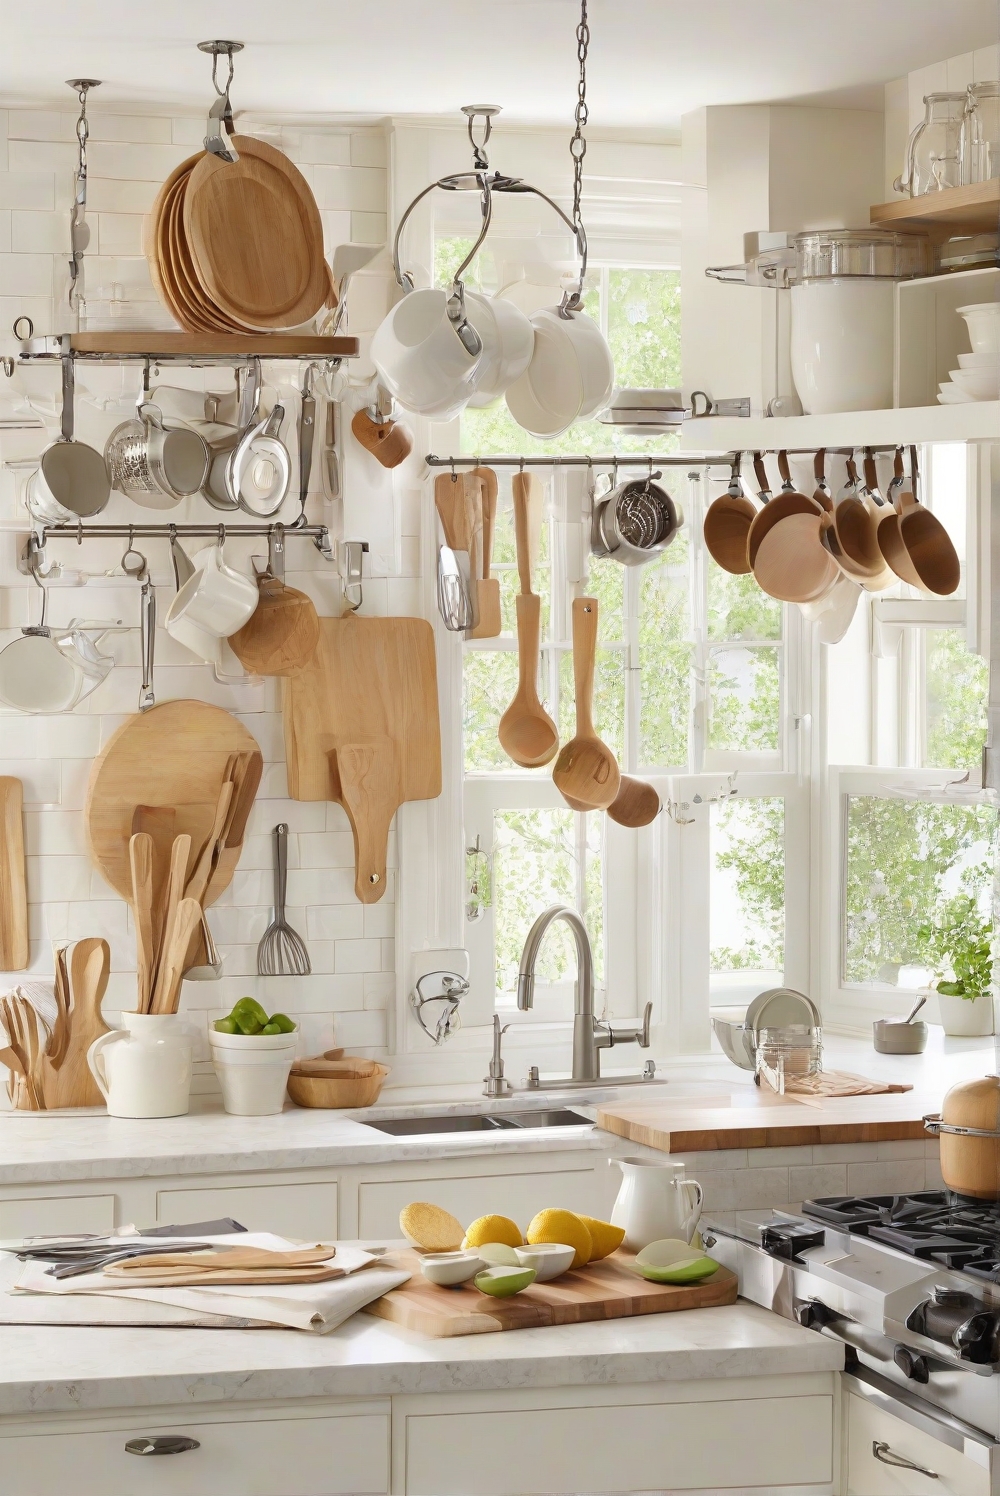 kitchen accessories, kitchen gadgets, kitchen tools, kitchen organization, kitchen decor, kitchenware, cooking essentials